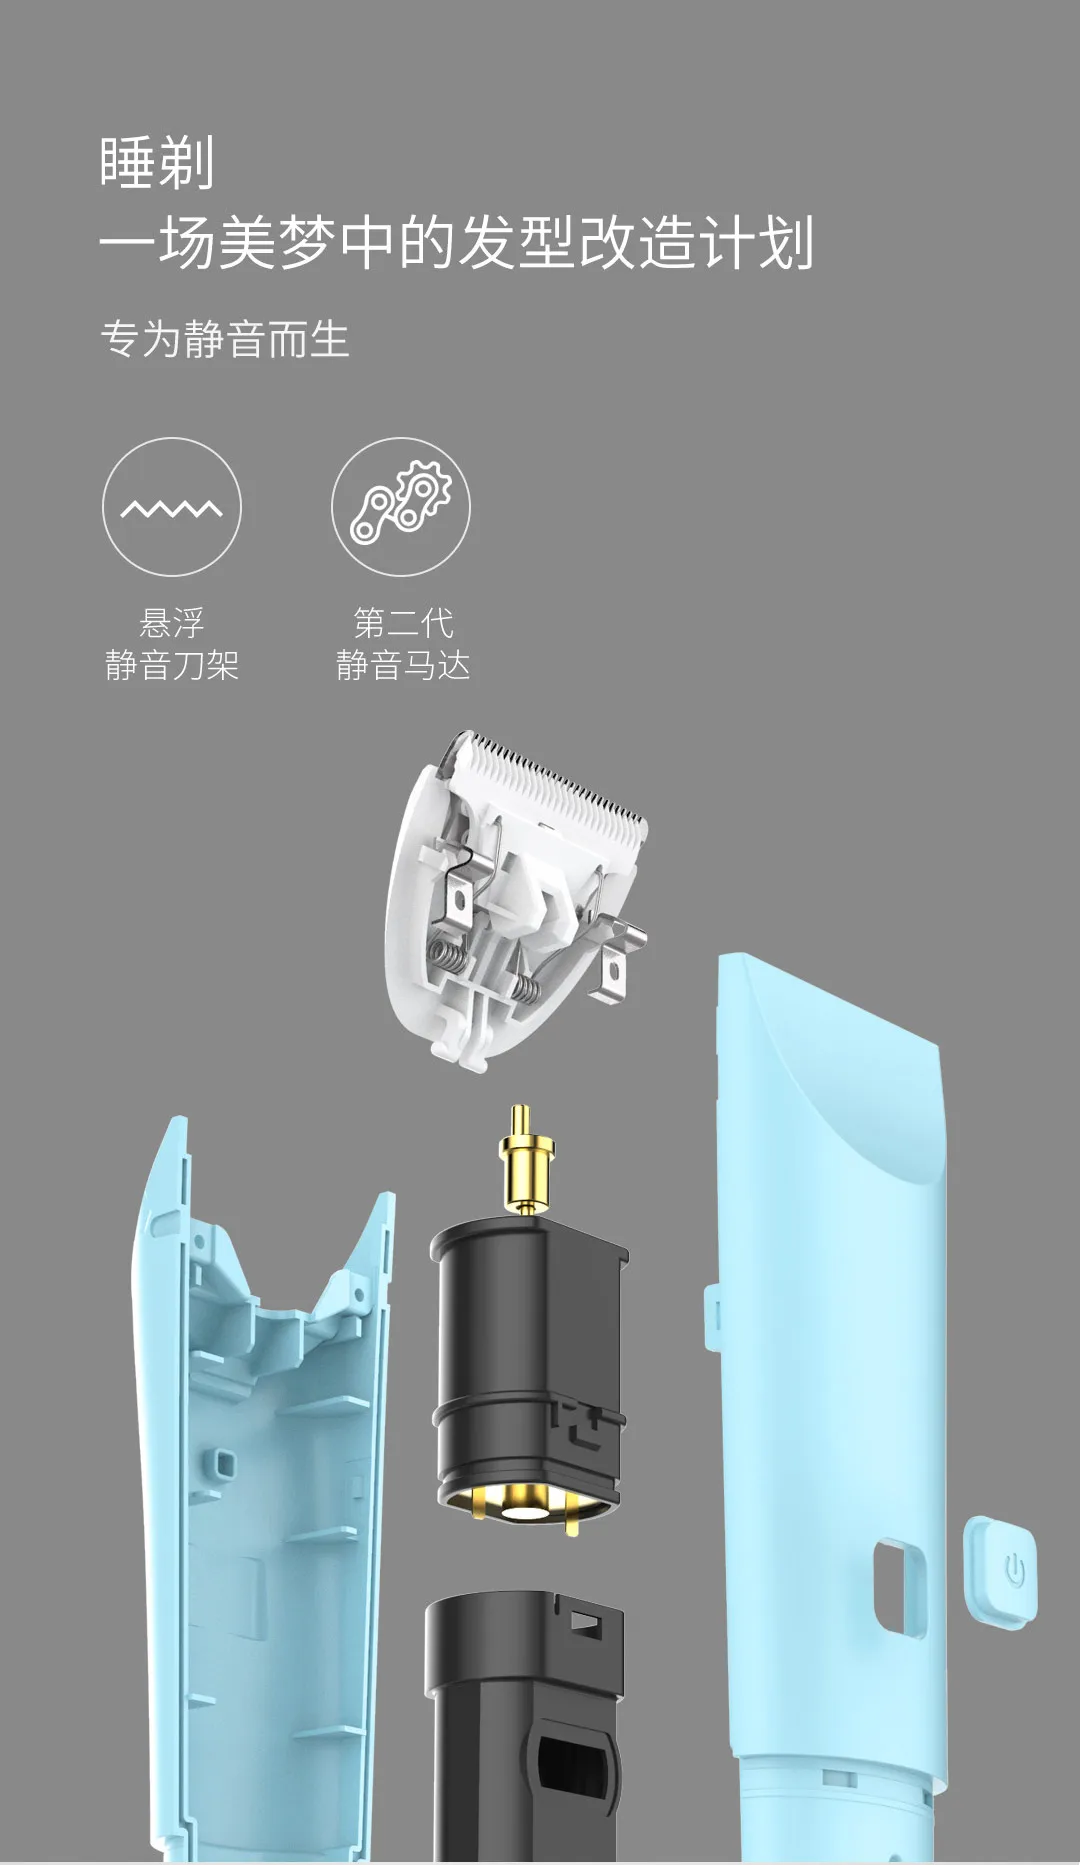 2 цвета Xiaomi Mijia Youpin Rushan детская Бесшумная машинка для стрижки волос Бесшумный Мотор R угол режущая головка IPX 7 водонепроницаемый